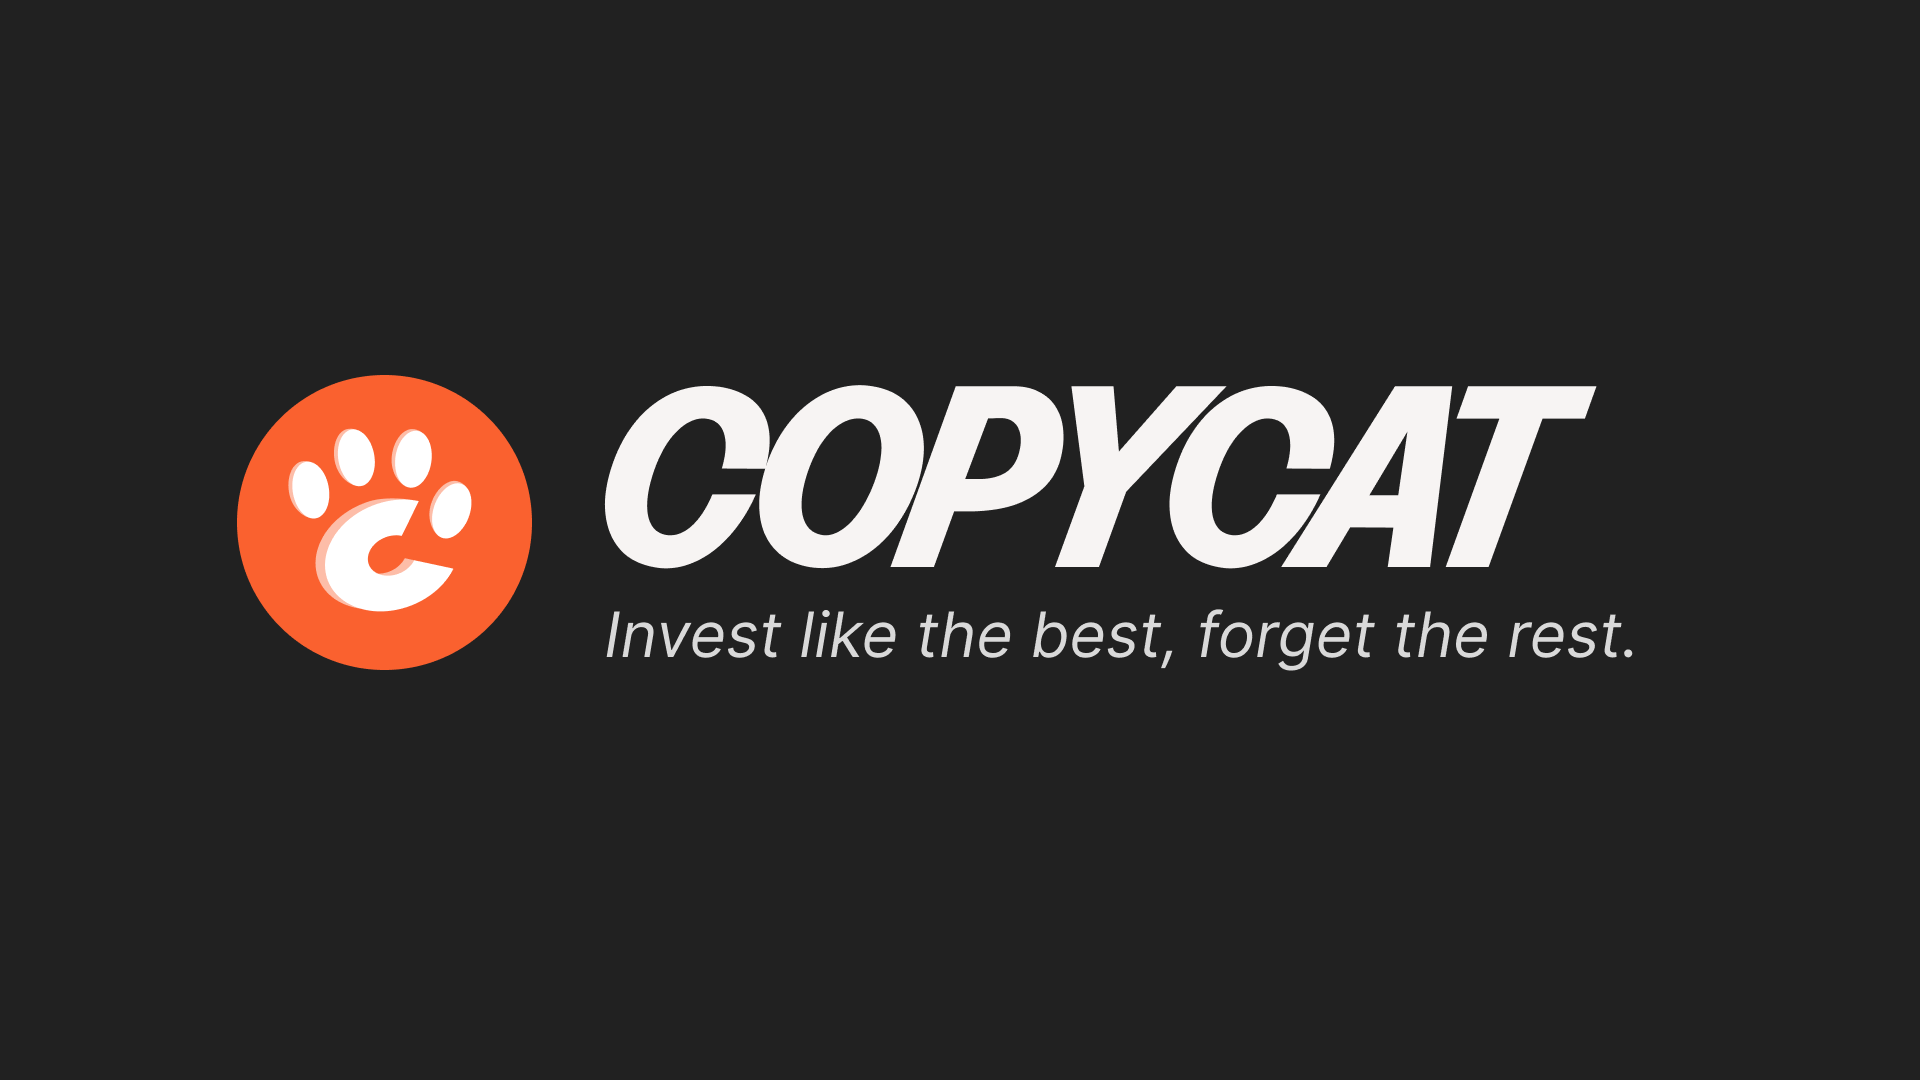 Copycat logo and wordmark